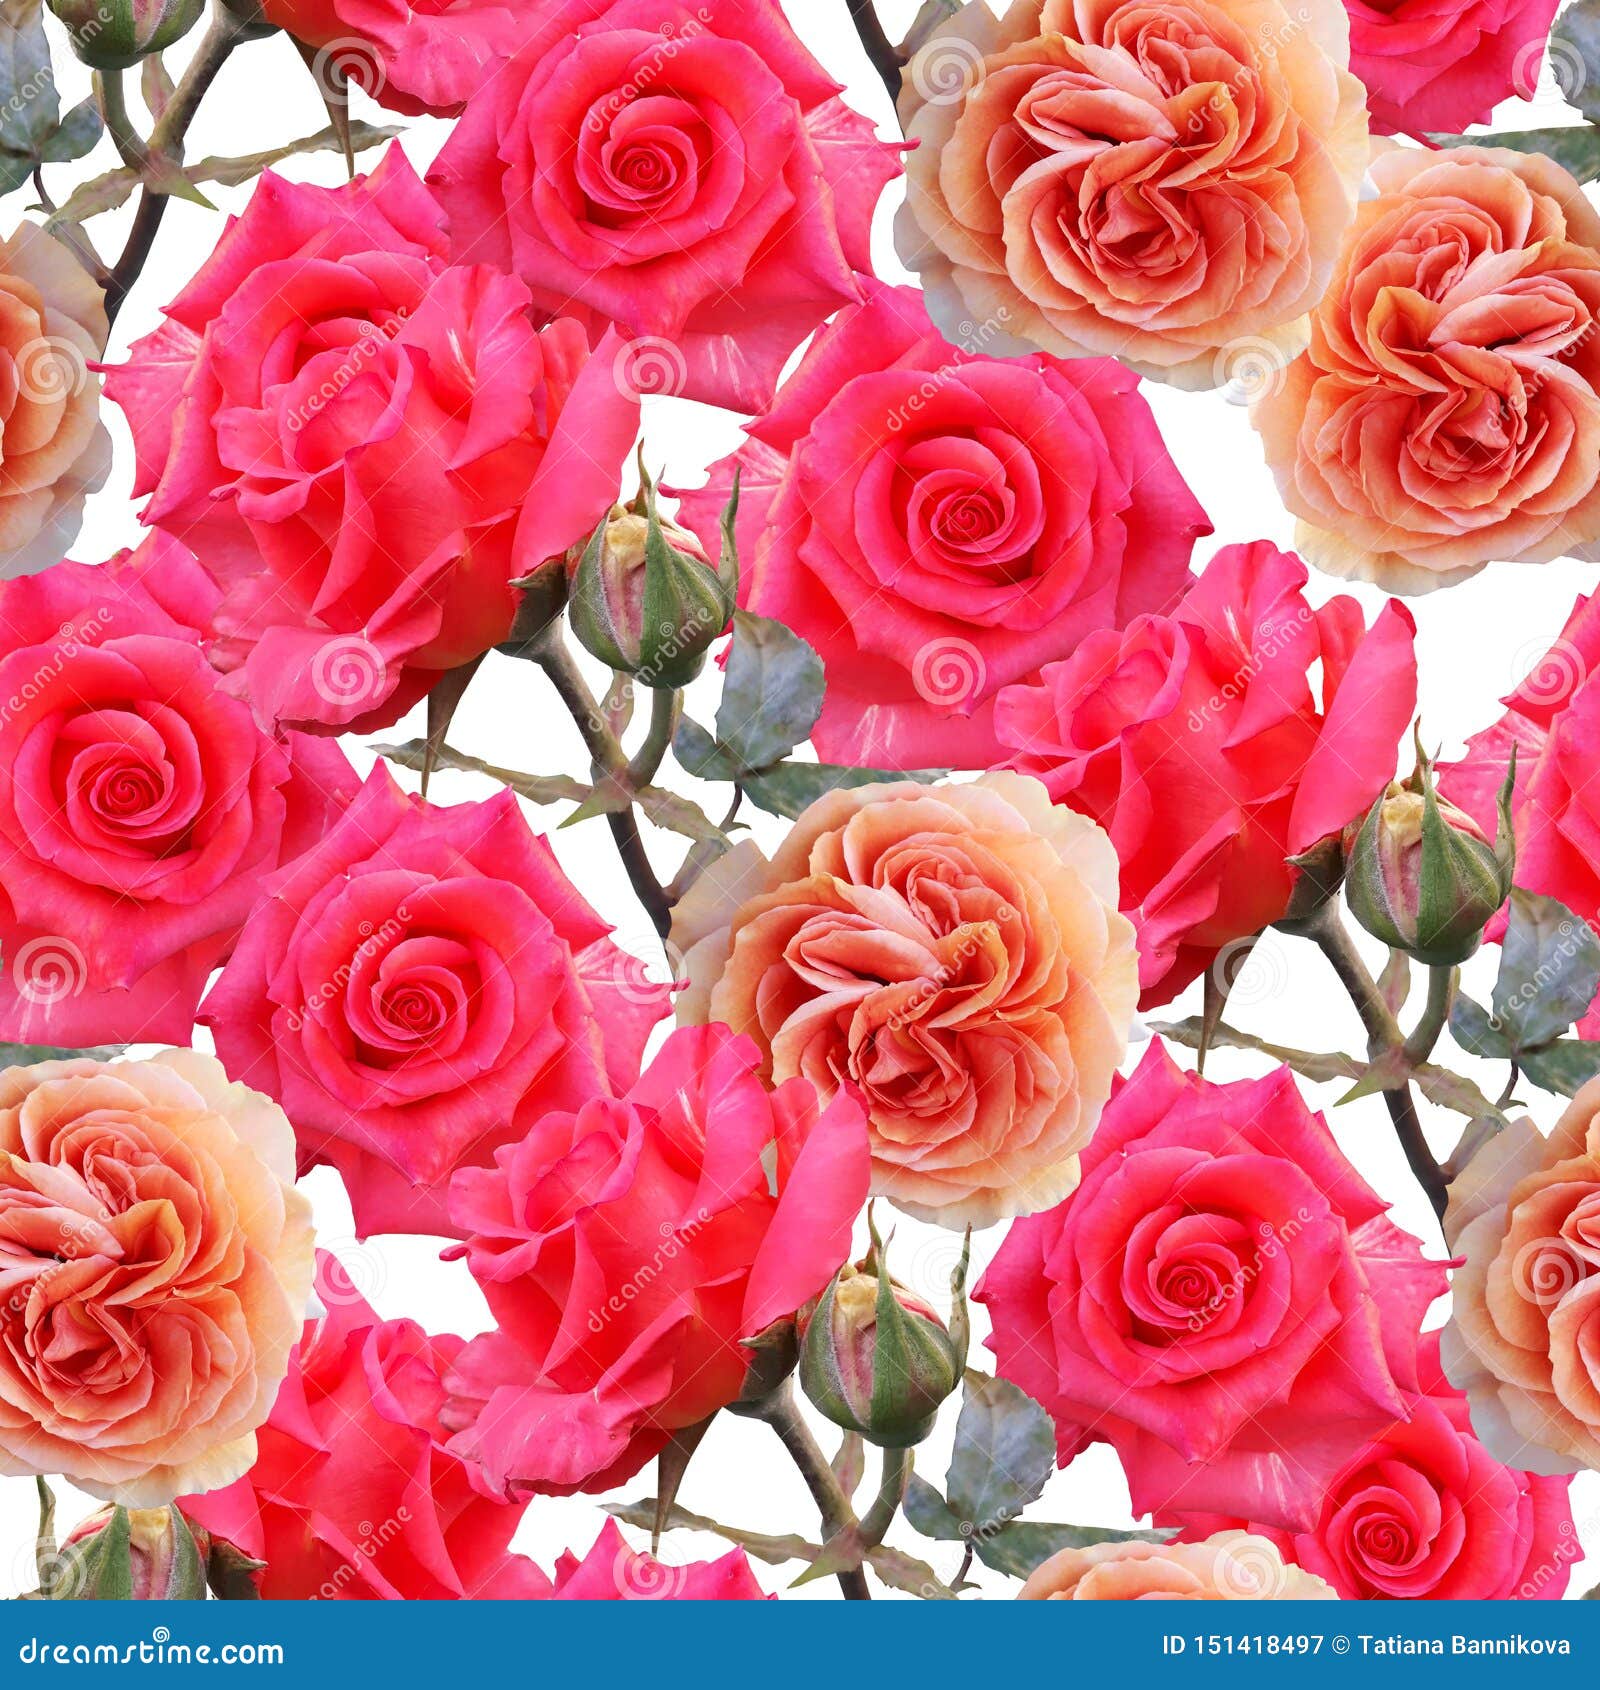 Với hình nền hoa hồng, bạn có thể thể hiện lòng yêu thương và sự quan tâm đến người thân, bạn bè của mình. Bức ảnh như một thông điệp ý nghĩa đến với những người bạn yêu thương.